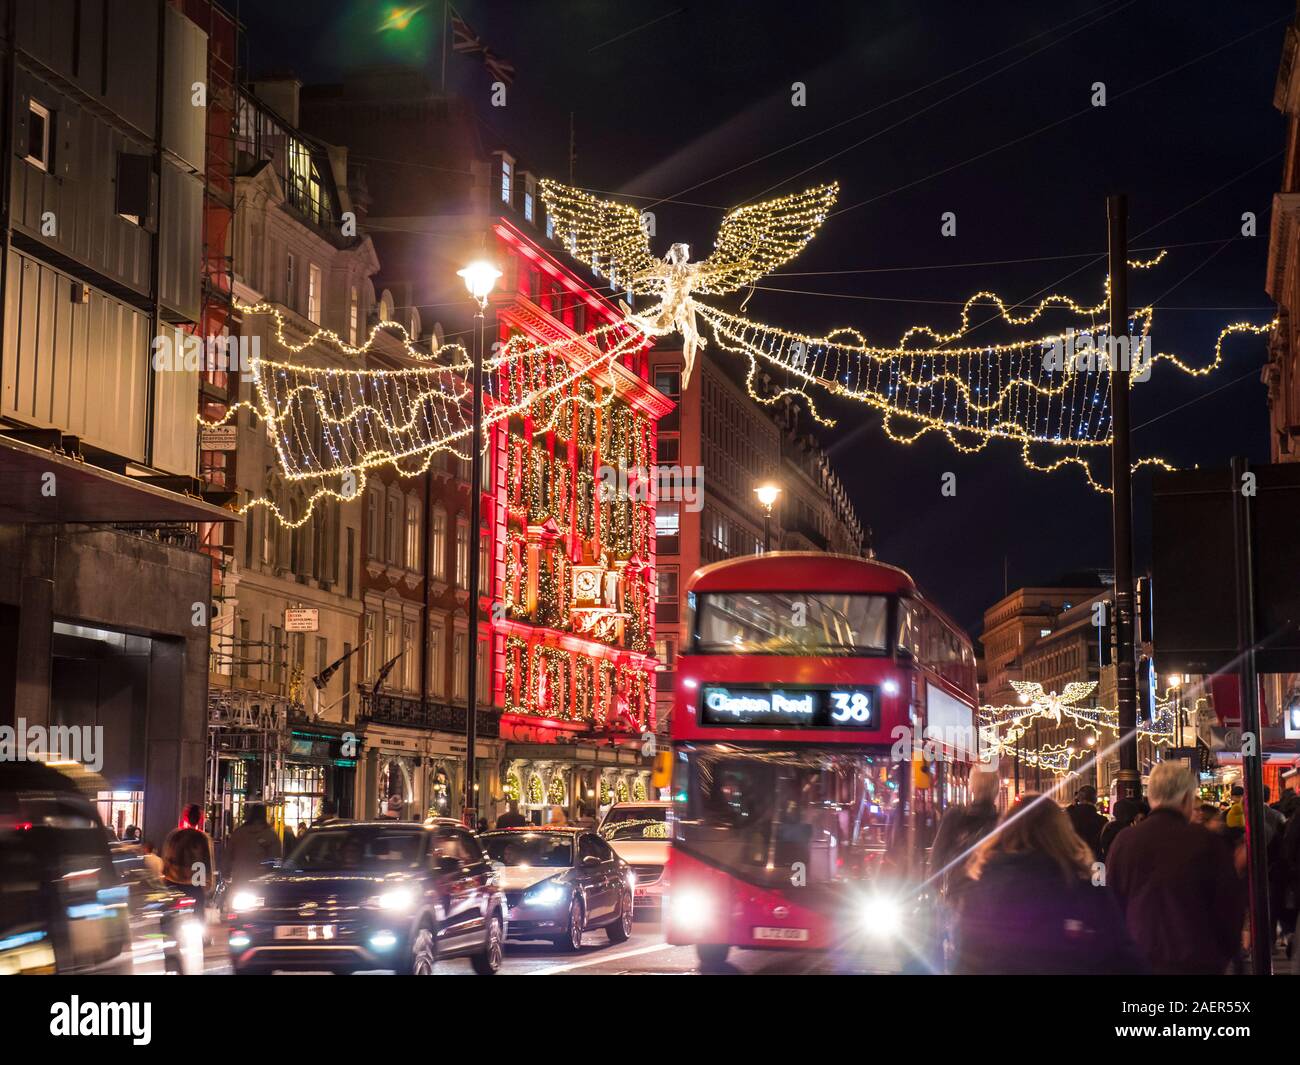 Weihnachten Piccadilly bei Nacht mit Fortnum & Mason Store beleuchtet mit Adventskalender Thema und roten hybrid London Bus, Einkäufer und Verkehr mit Weihnachten Goldener Engel lights Illuminationen Piccadilly London UK Stockfoto